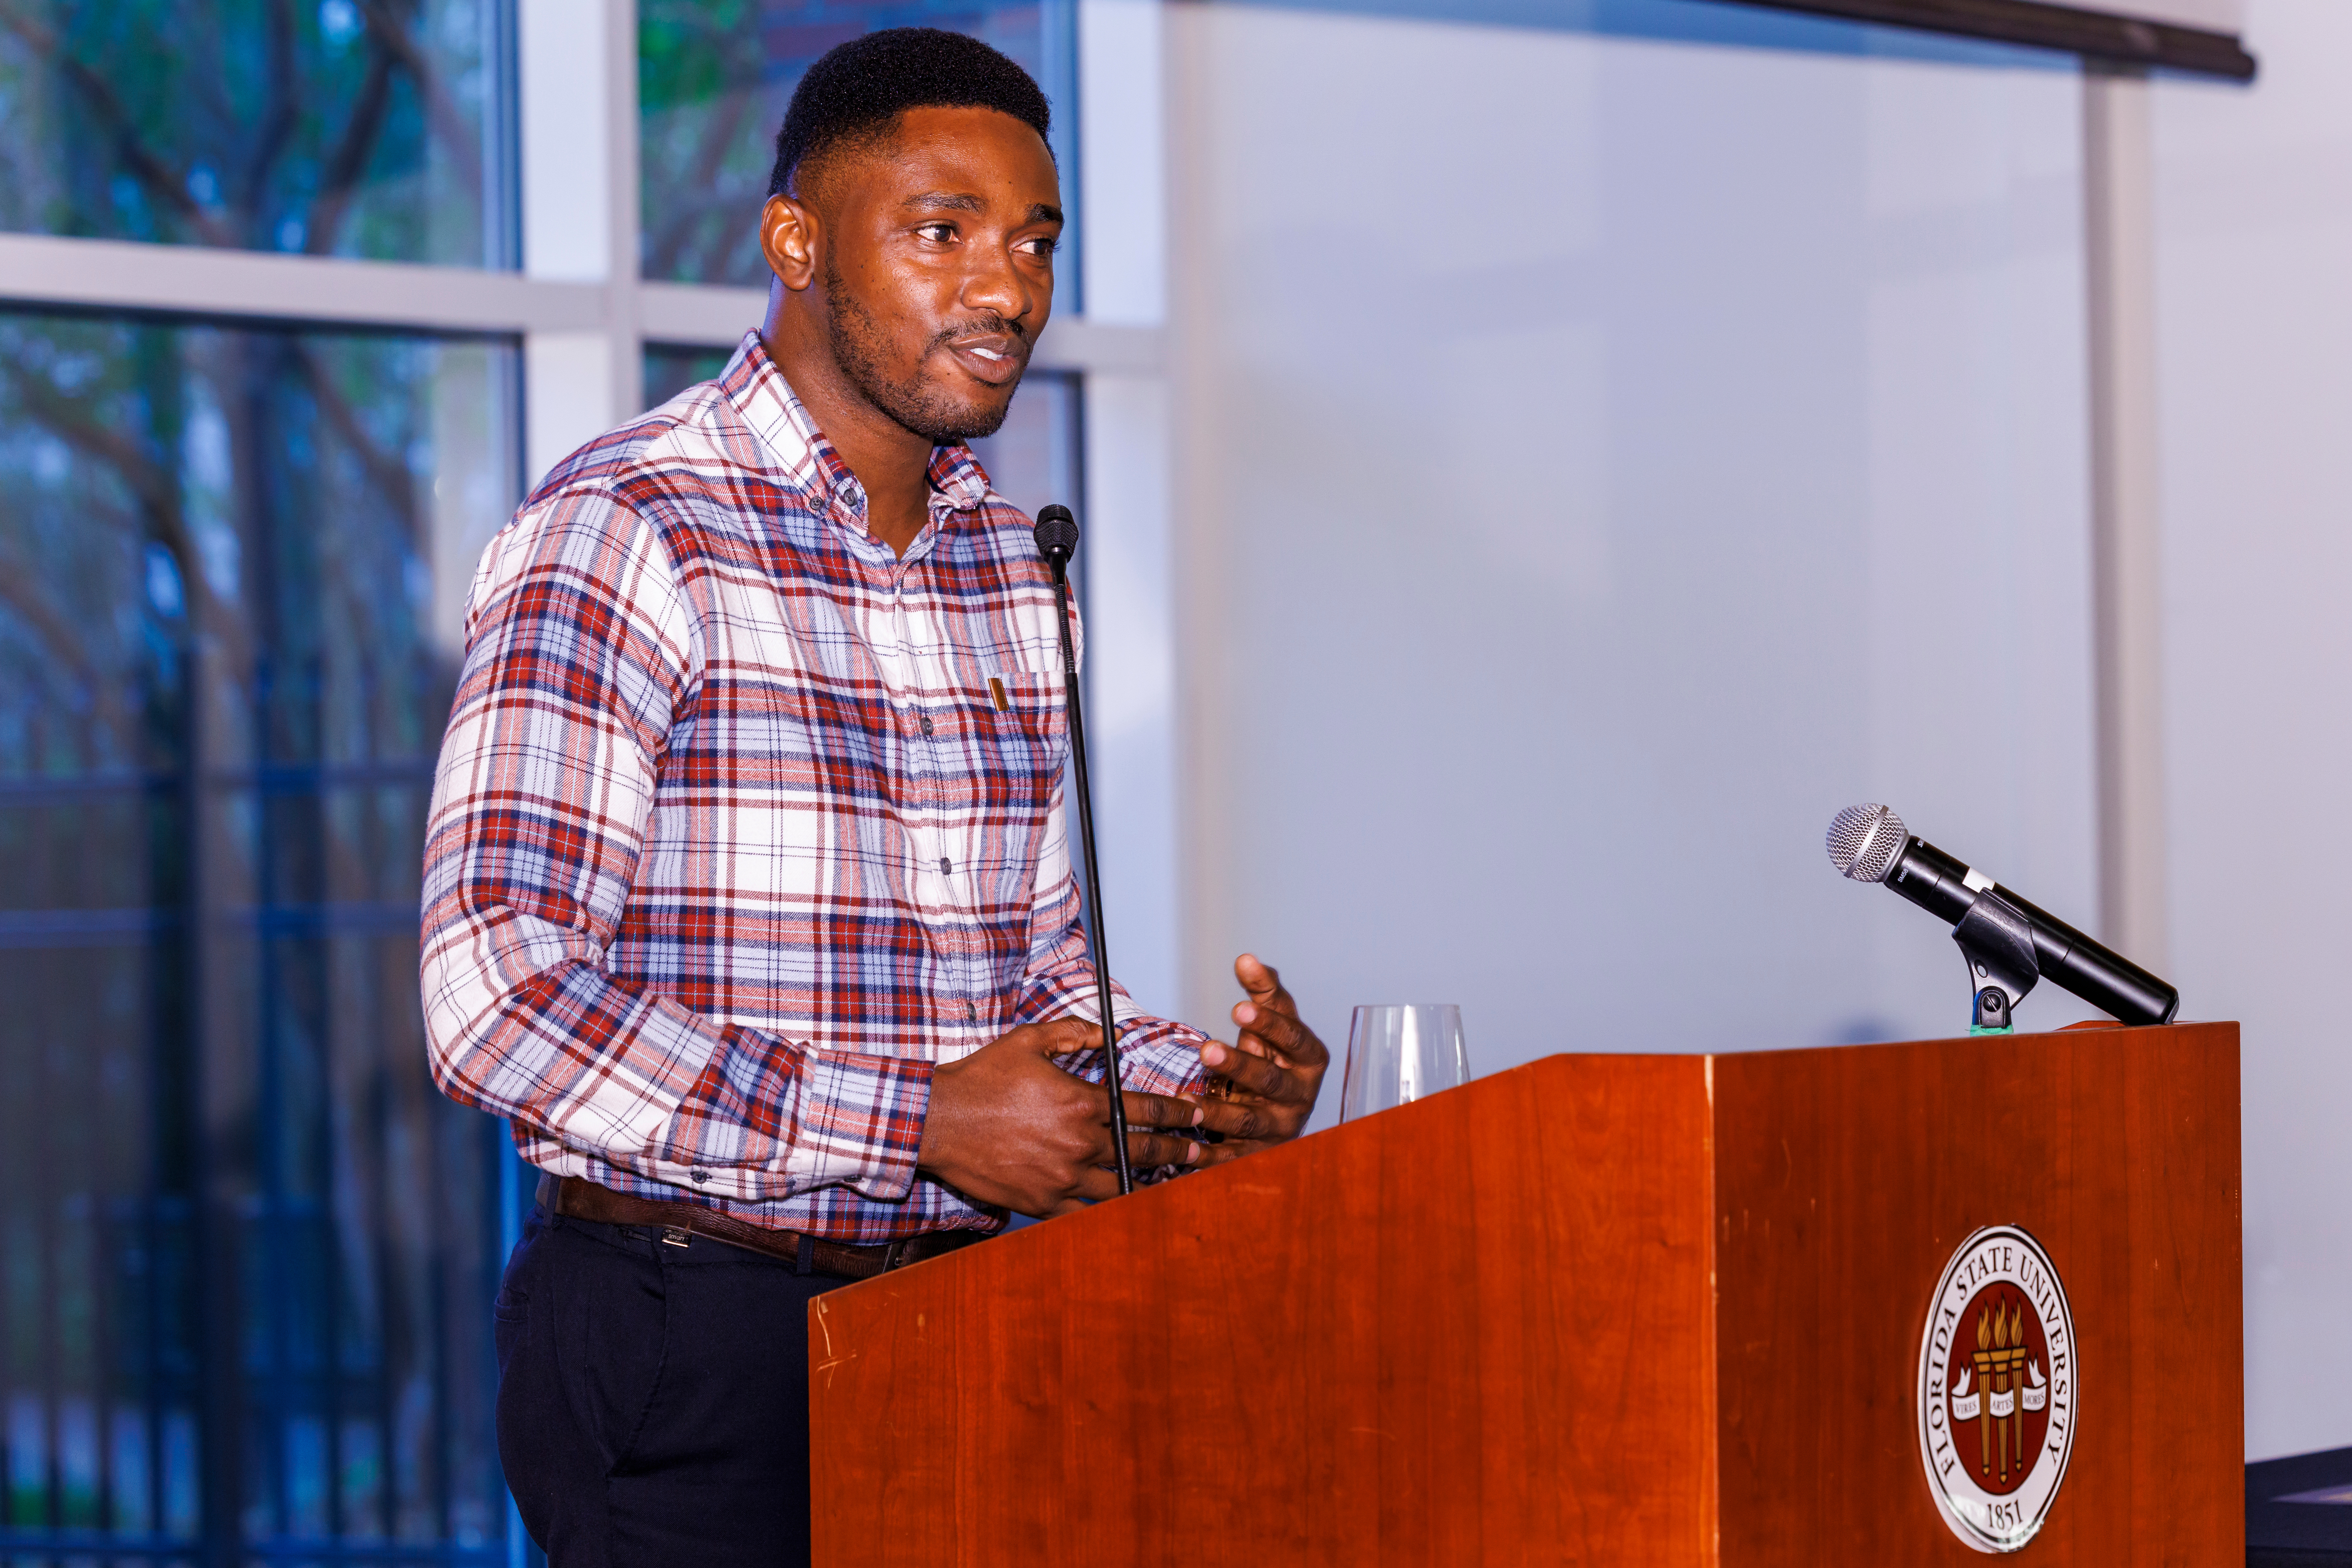 Samuel Kwawukume speaking at an FSU podium